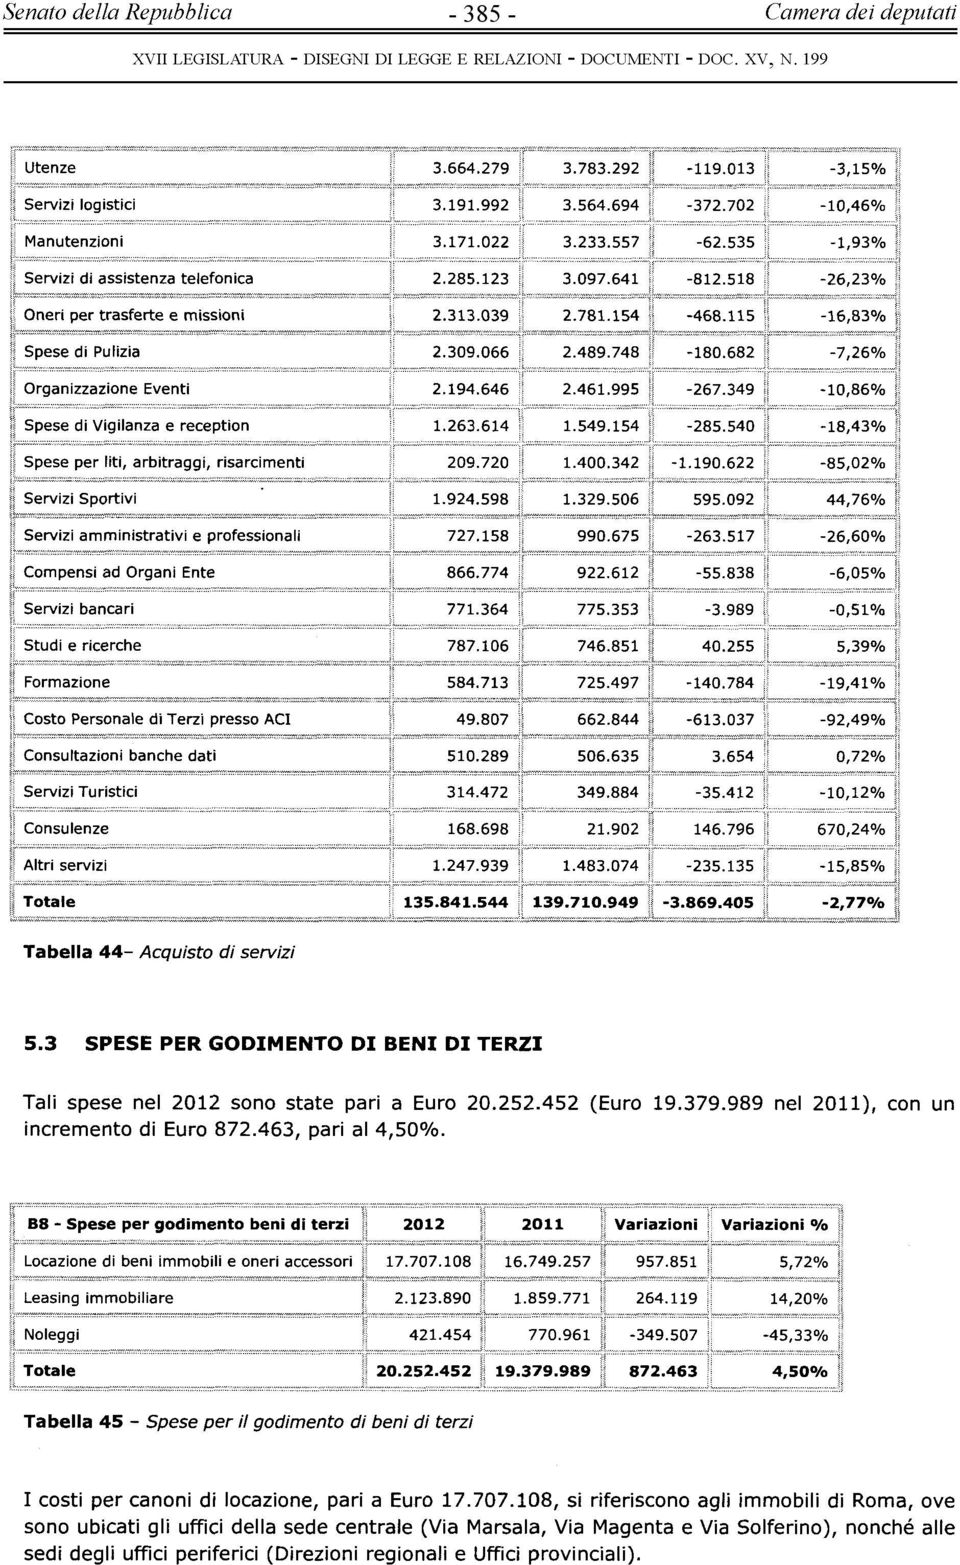 3 SPESE PER GODIMENTO DI BENI DI TERZI Tali spese nel 2012 sono state pari a Euro 20.252.452 (Euro 19.379.989 nel 2011), con un incremento di Euro 872.463, pari al 4,50%.